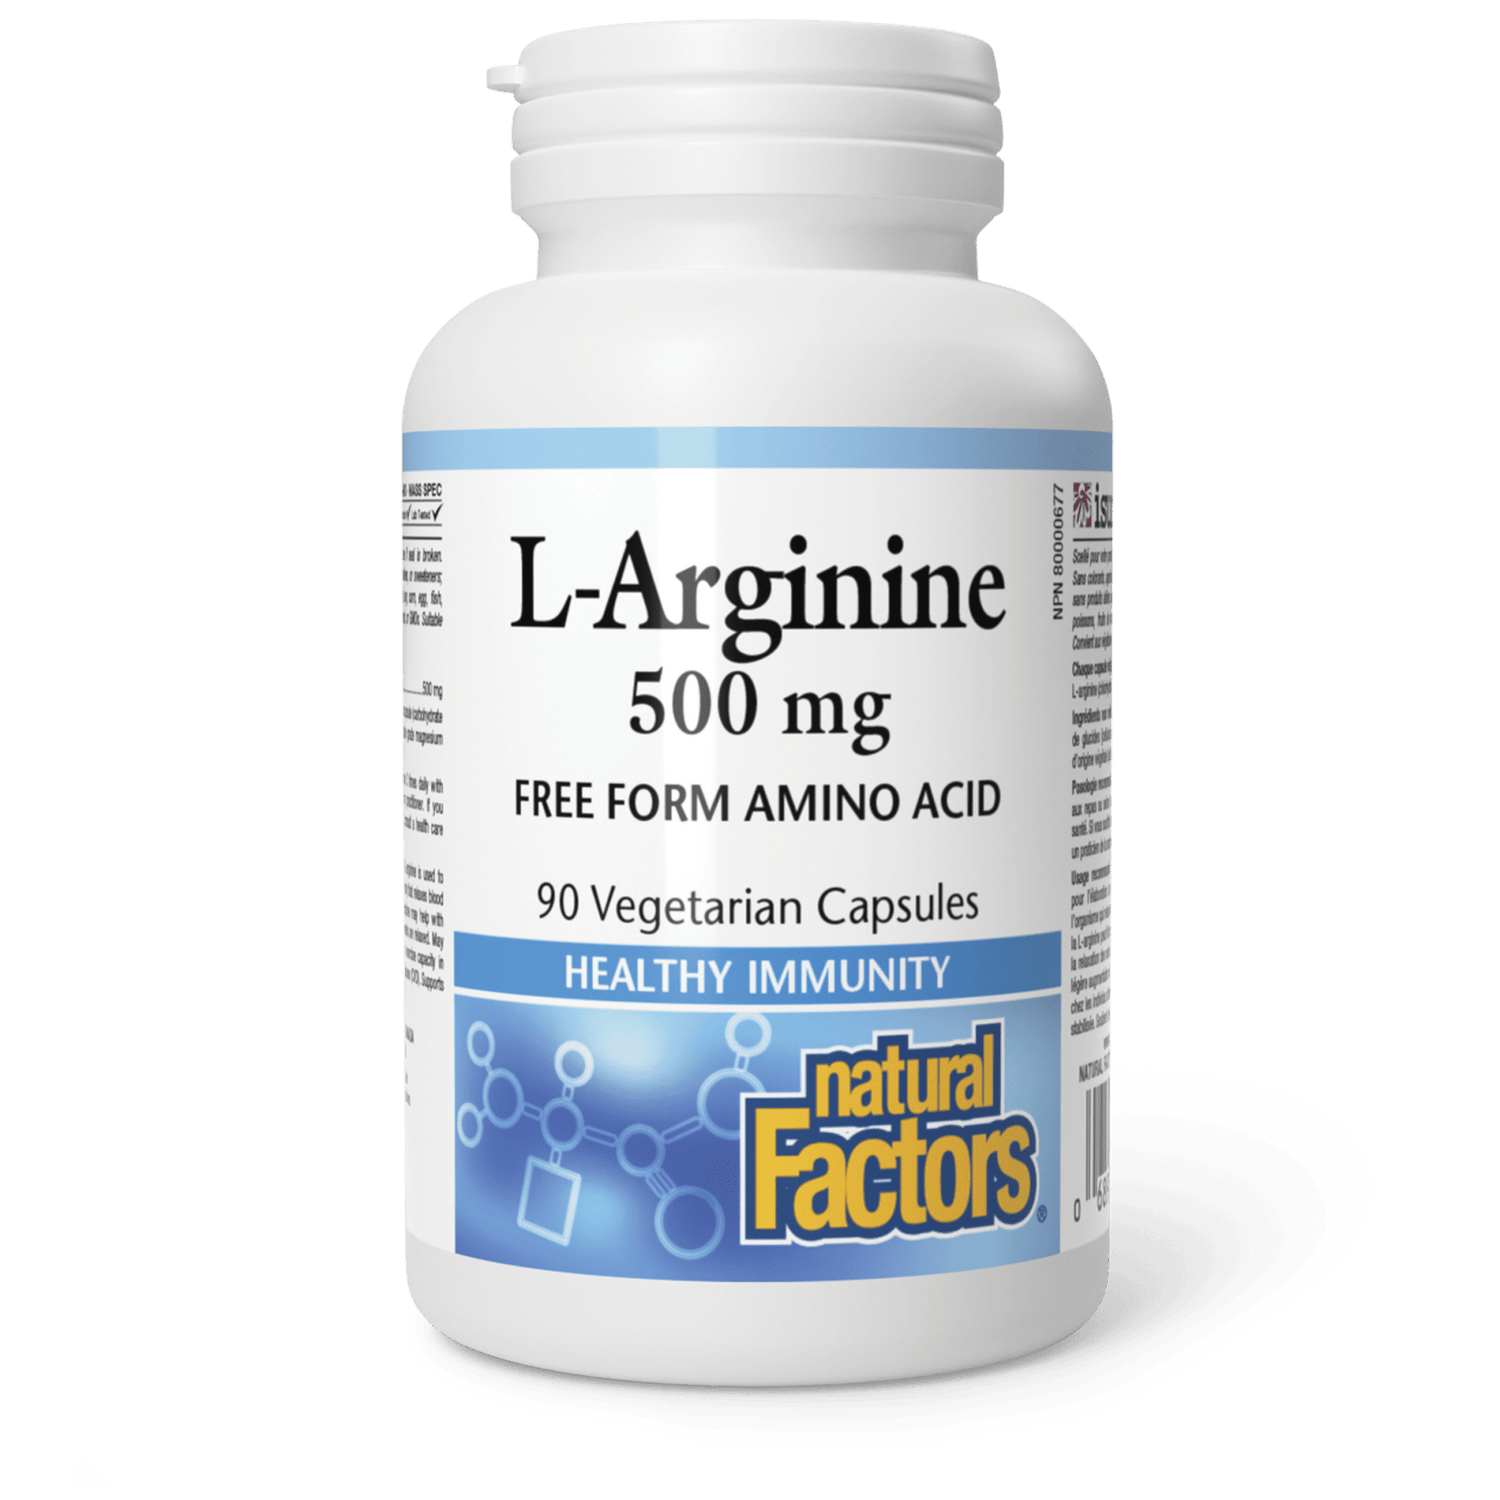 L-Arginine 500 mg, Natural Factors|v|image|2821